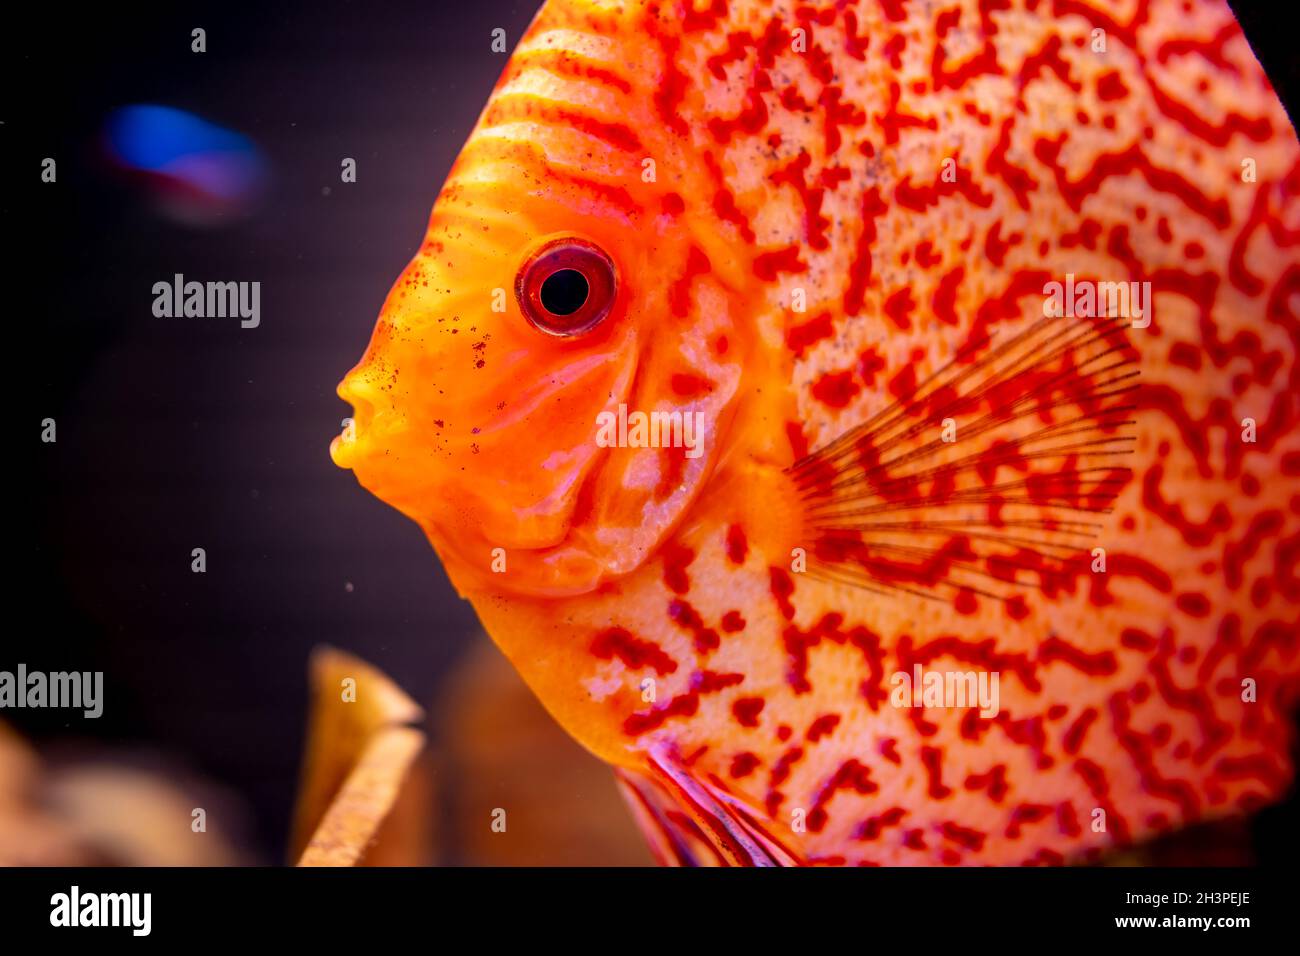 Orange discus fish in the aquarium Stock Photo